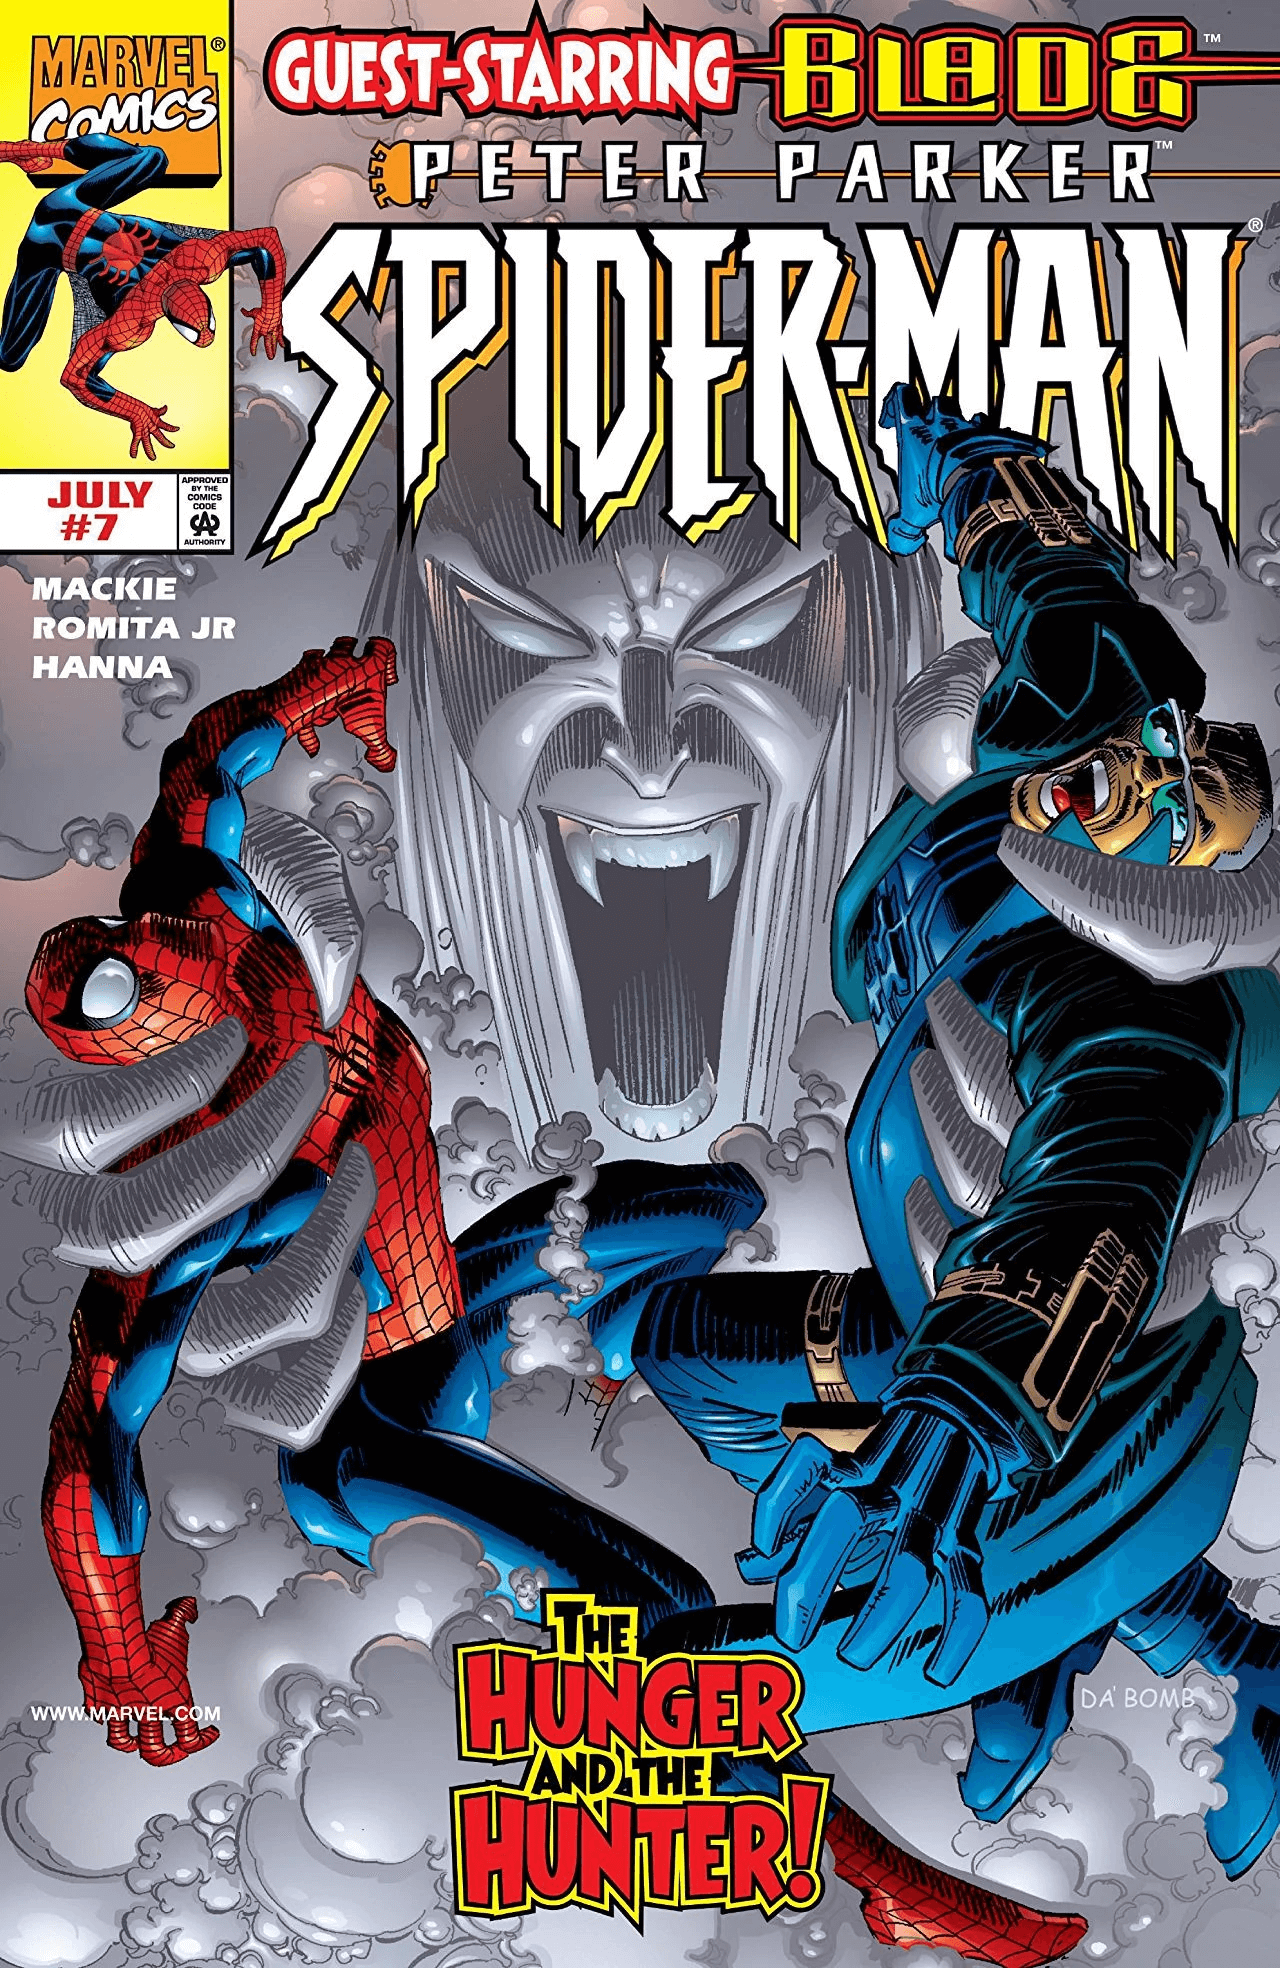 Cover di Peter Parker: Spider-Man 7 di John Romita Jr, con Spider-Man e Blade contro Hunger